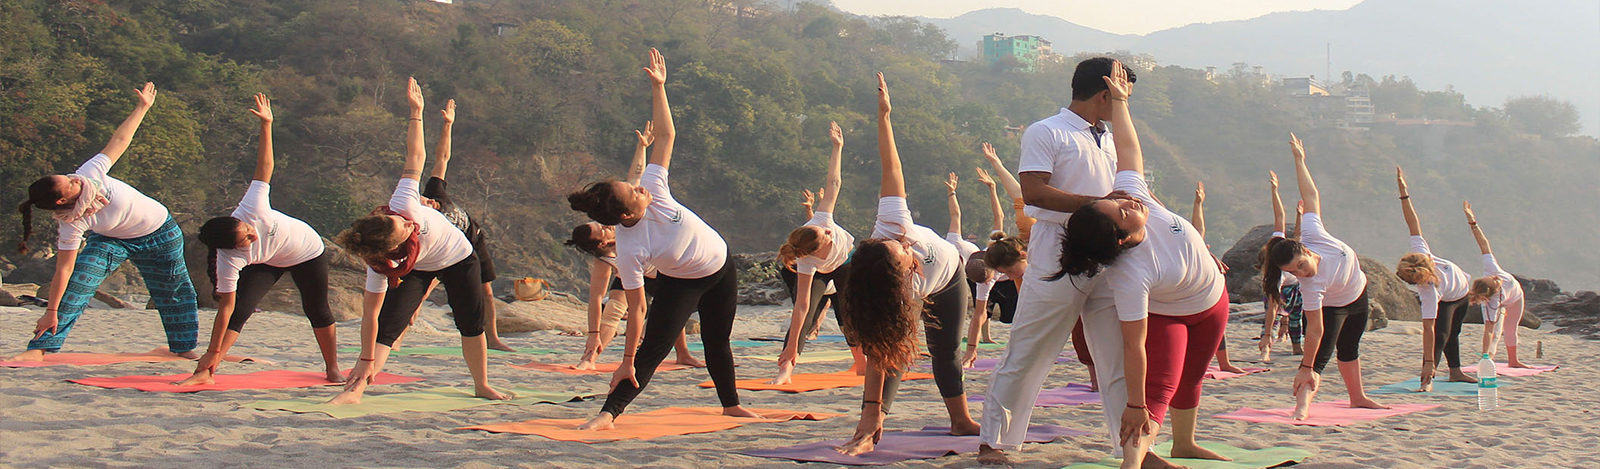 Yoga Tour of India